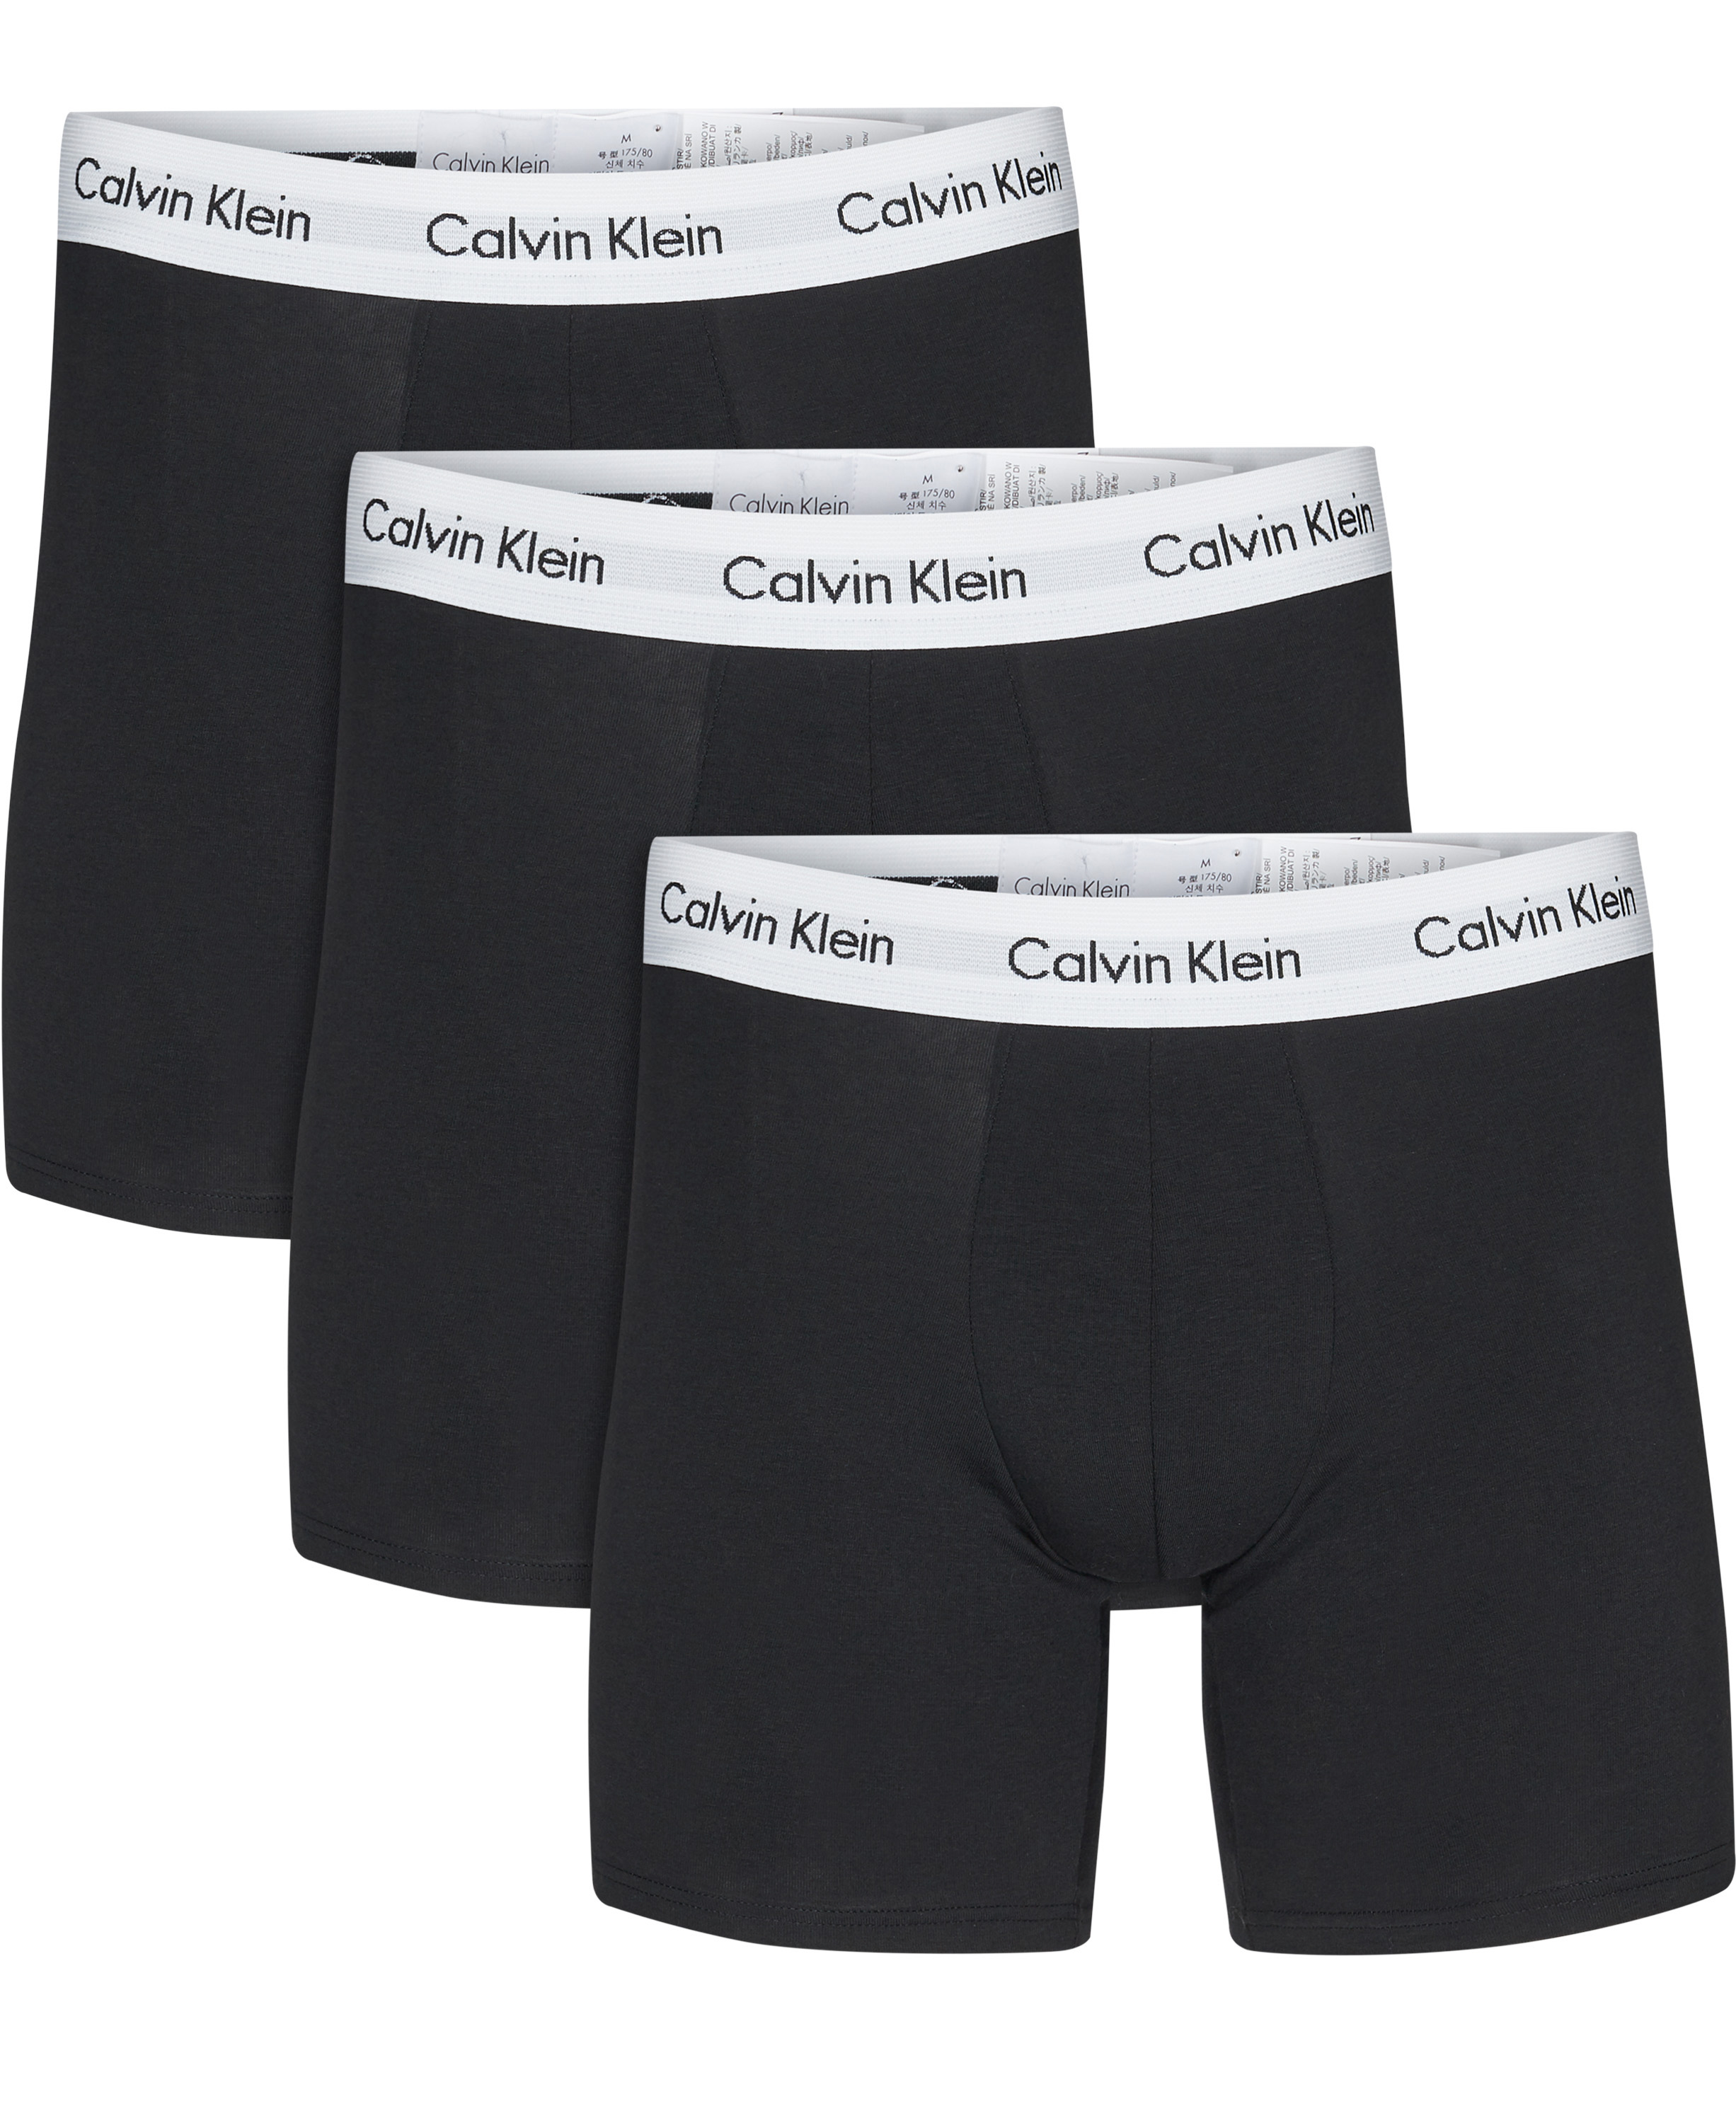 Calvin Klein 3pack Boxer Briefs